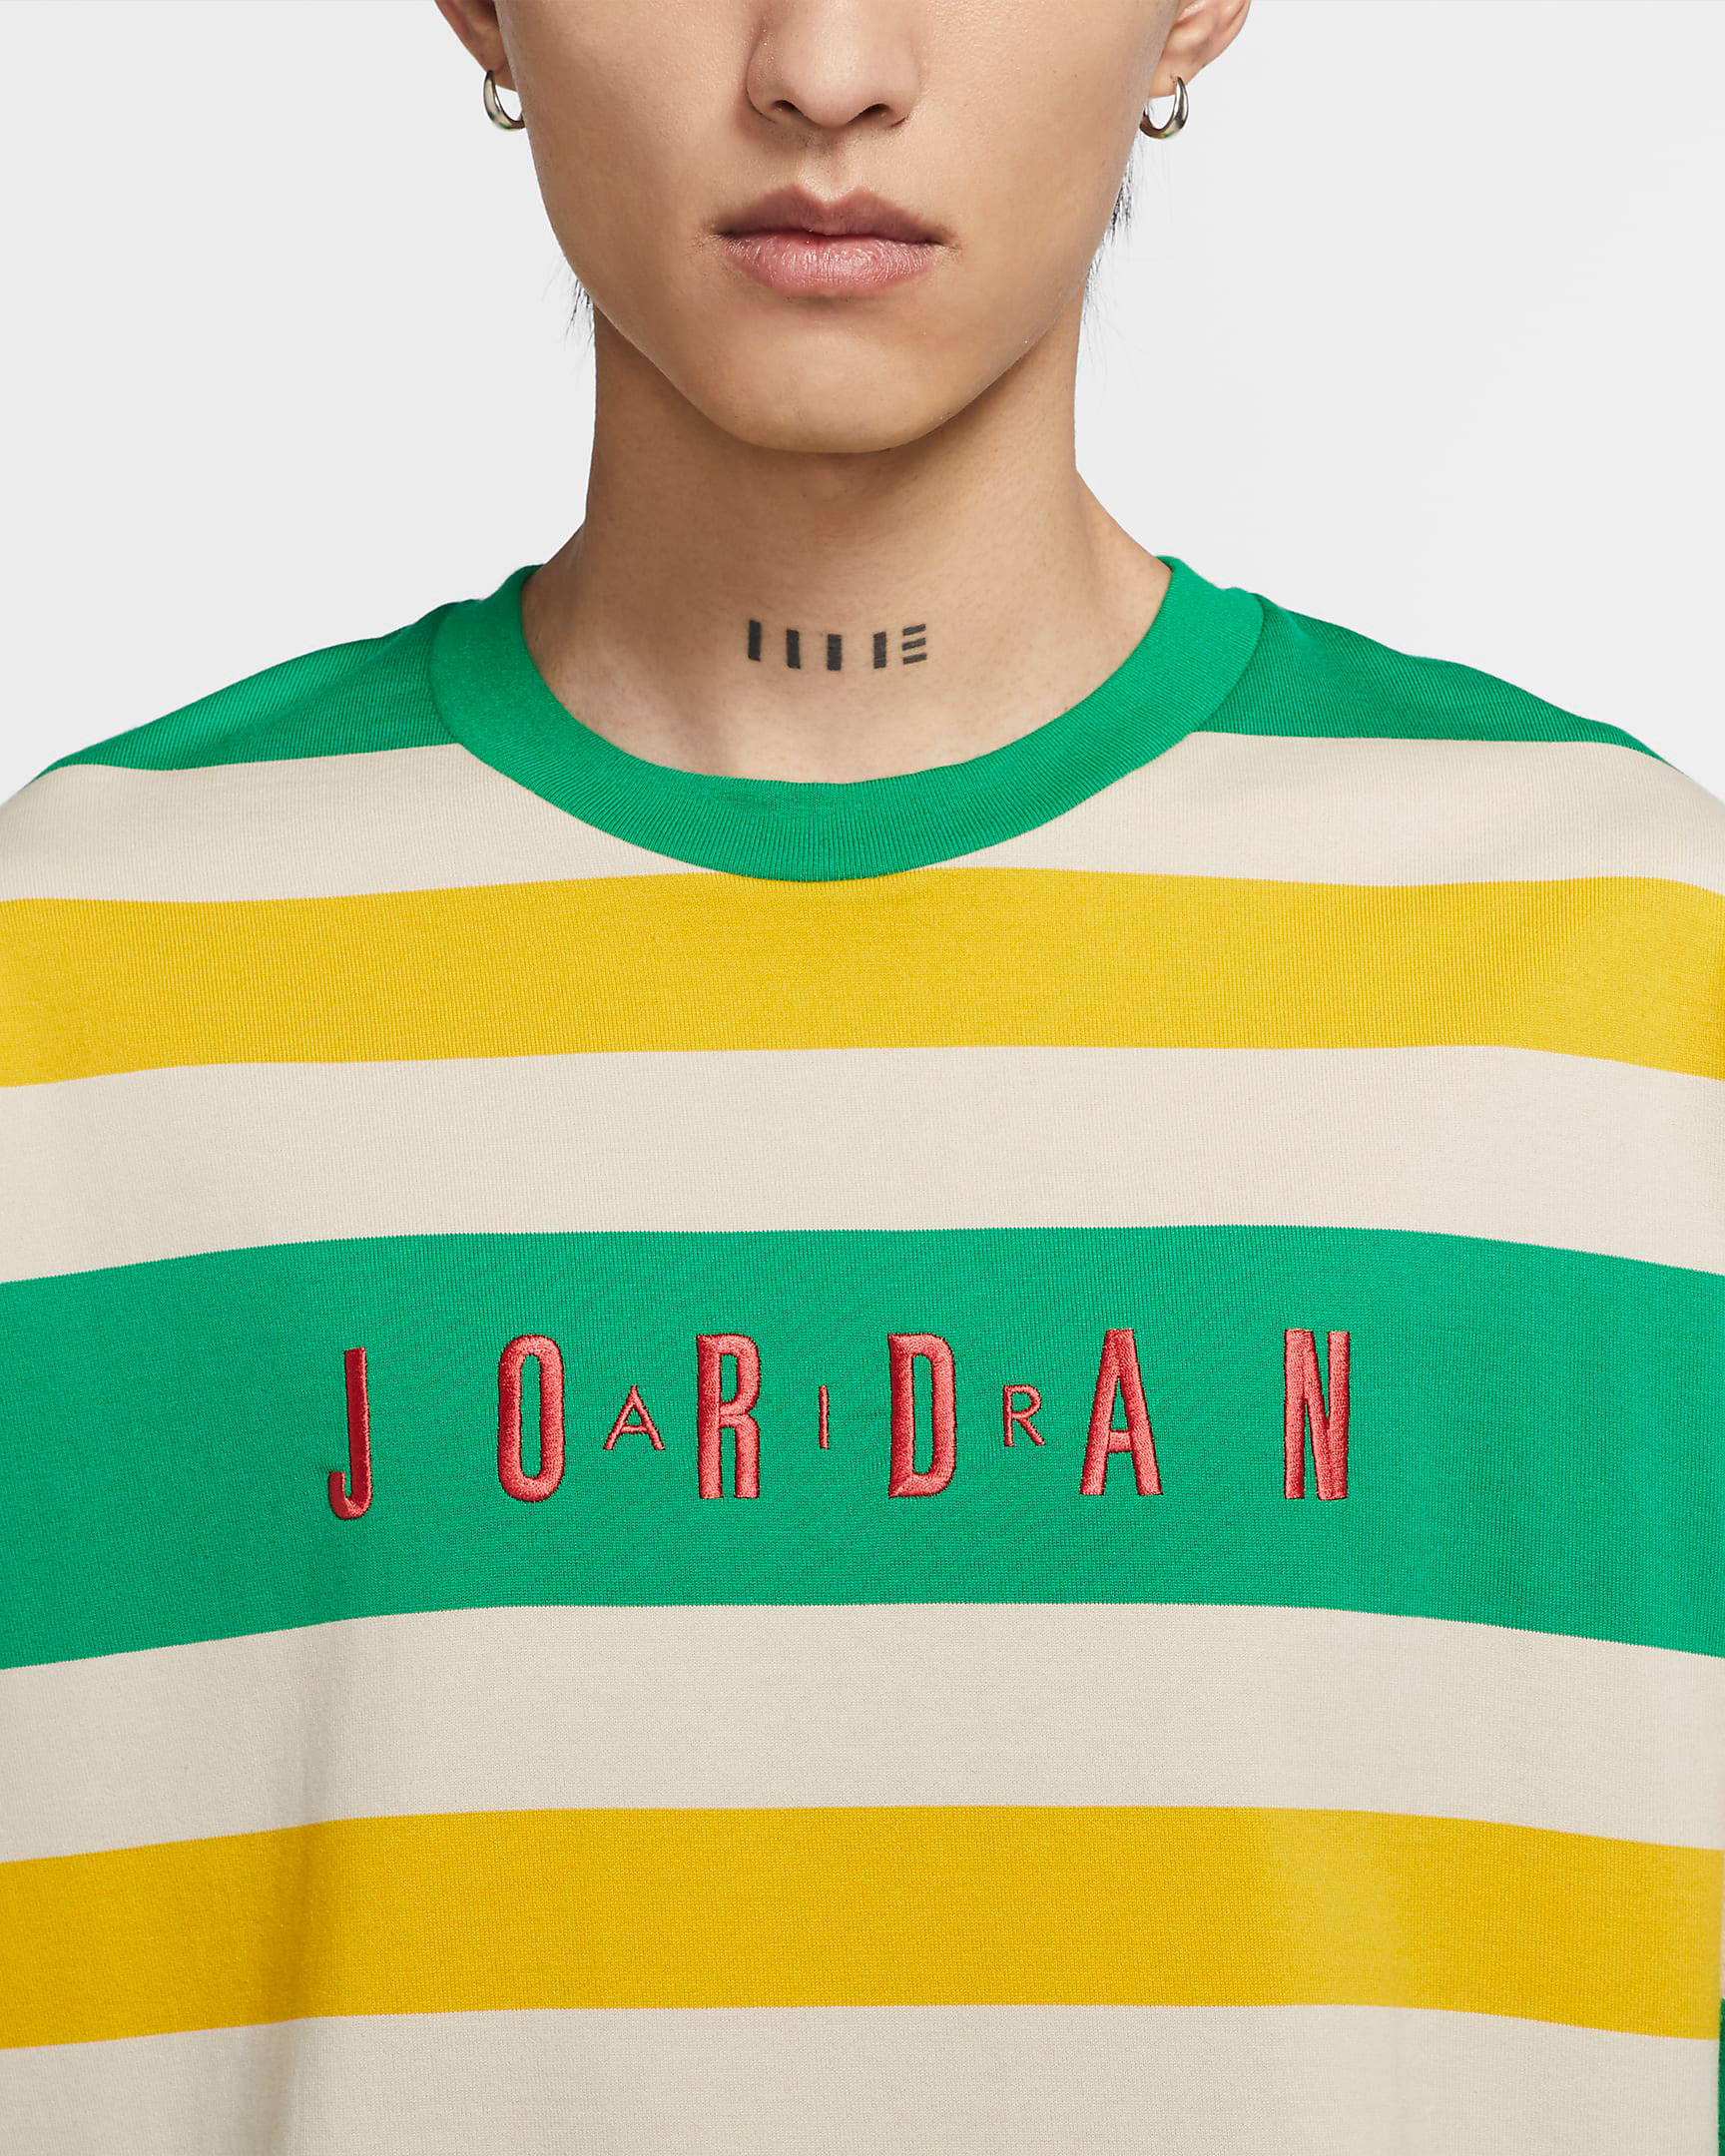 green and yellow jordan shirt